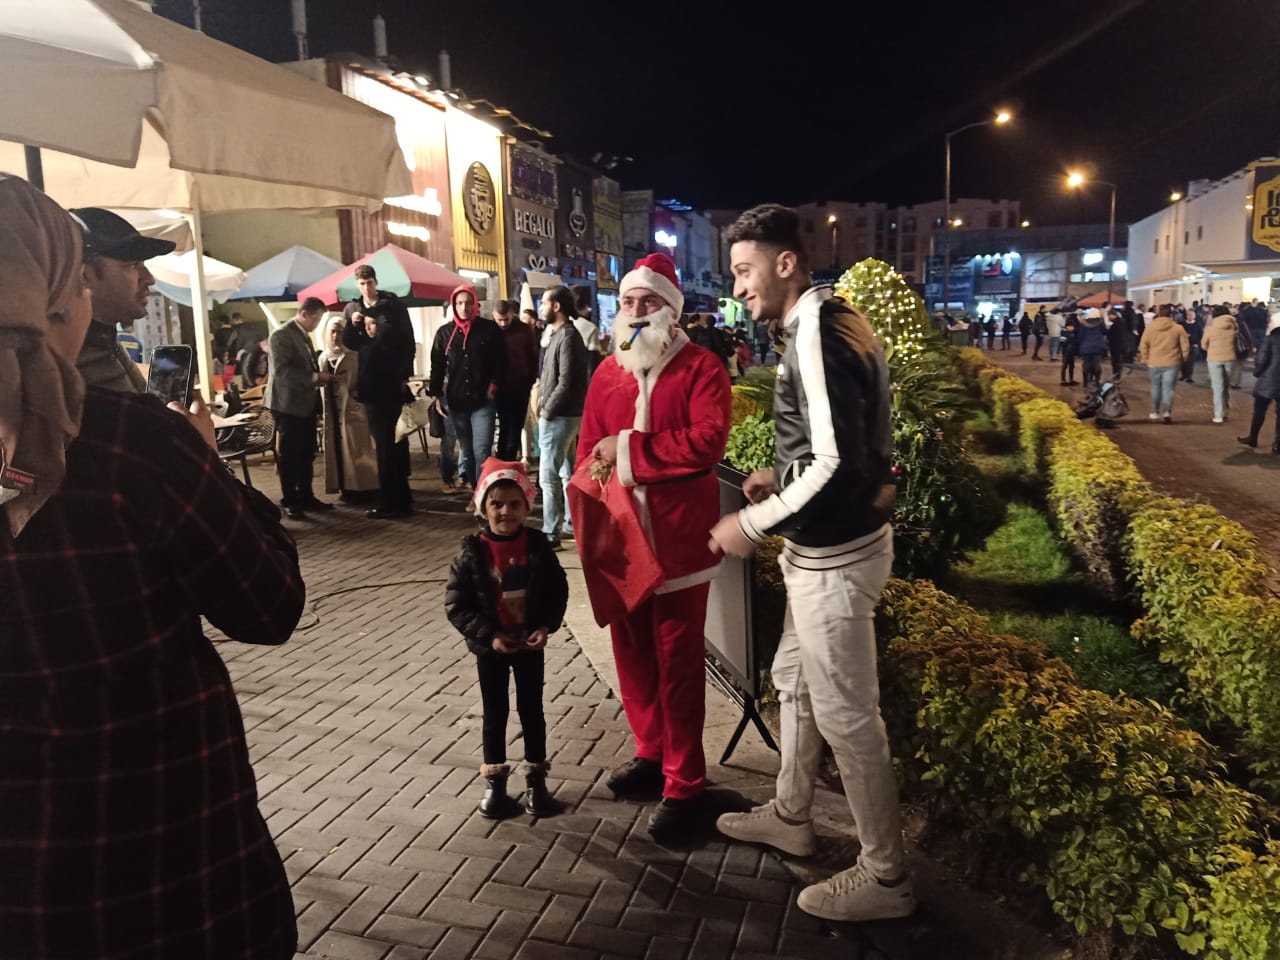 بابا نويل في شوارع القاهرة الجديدة المواطنون يحتفلون بليلة رأس السنة بالتنزه في الميادين والتقاط الصور |صور